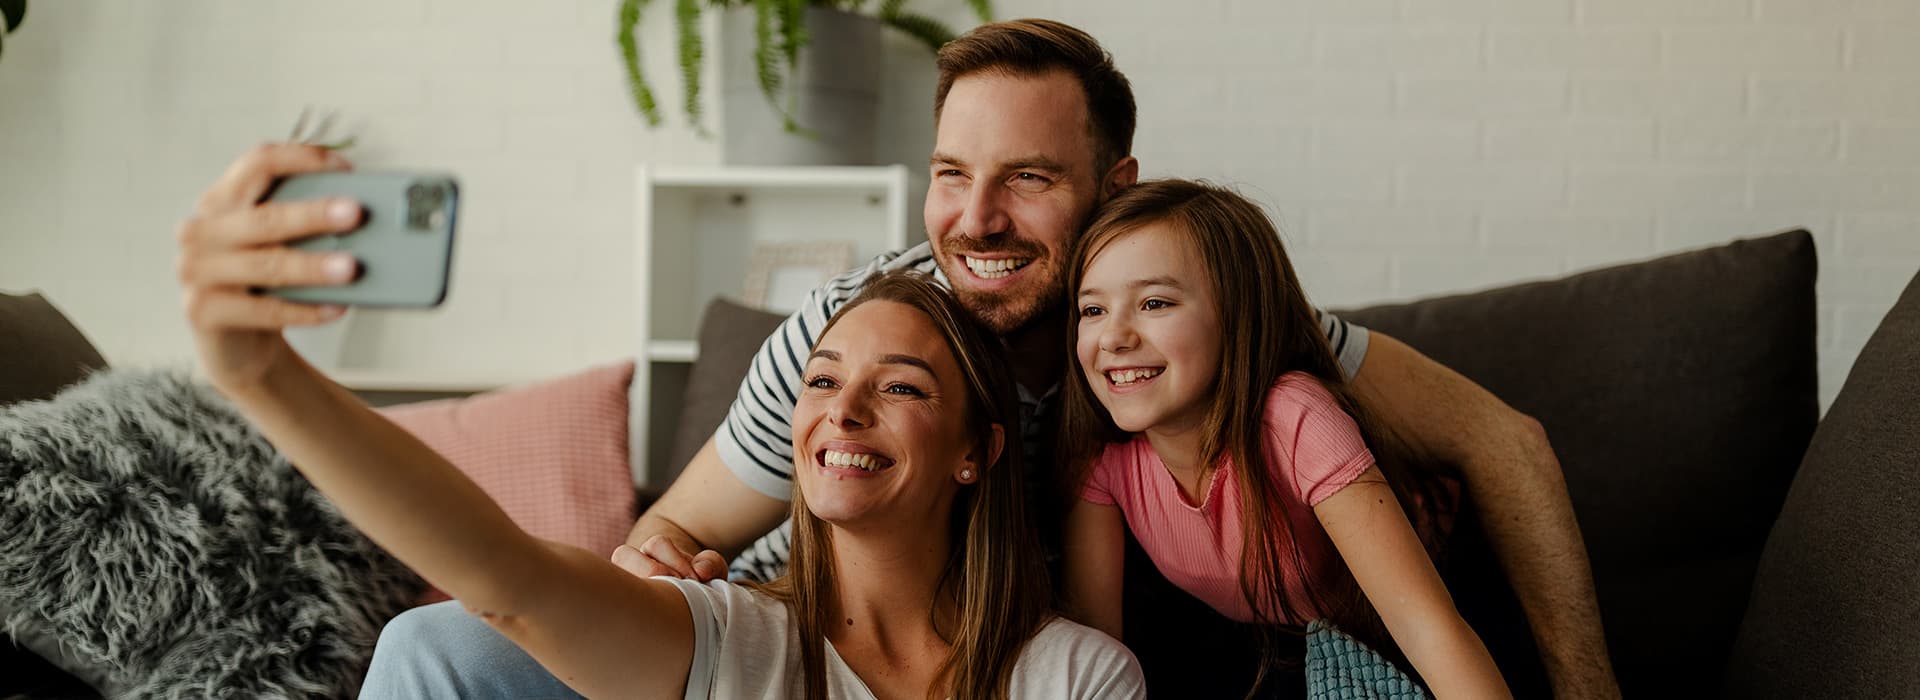 Junge Familie sitzt lächelnd auf dem Sofa in und schießt ein Selfie